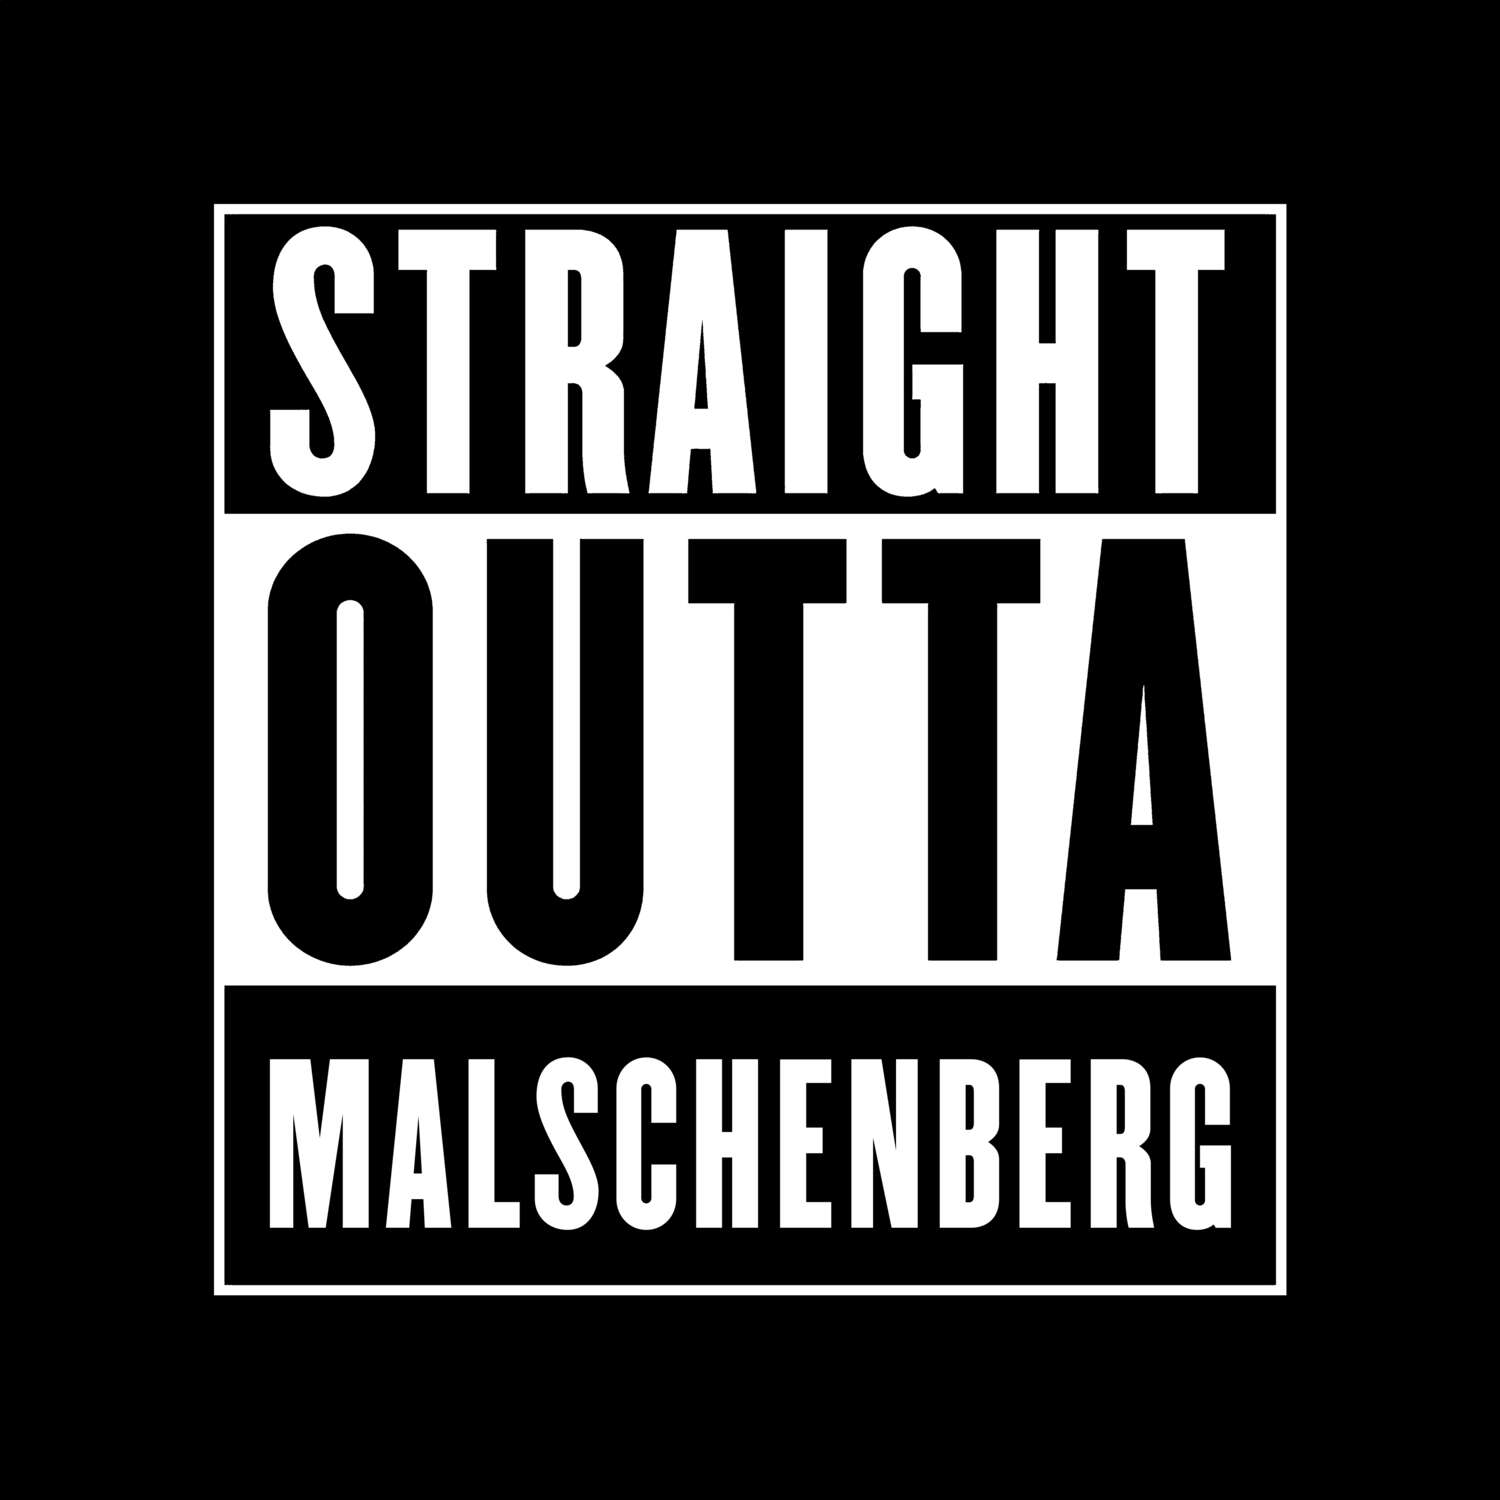 Malschenberg T-Shirt »Straight Outta«